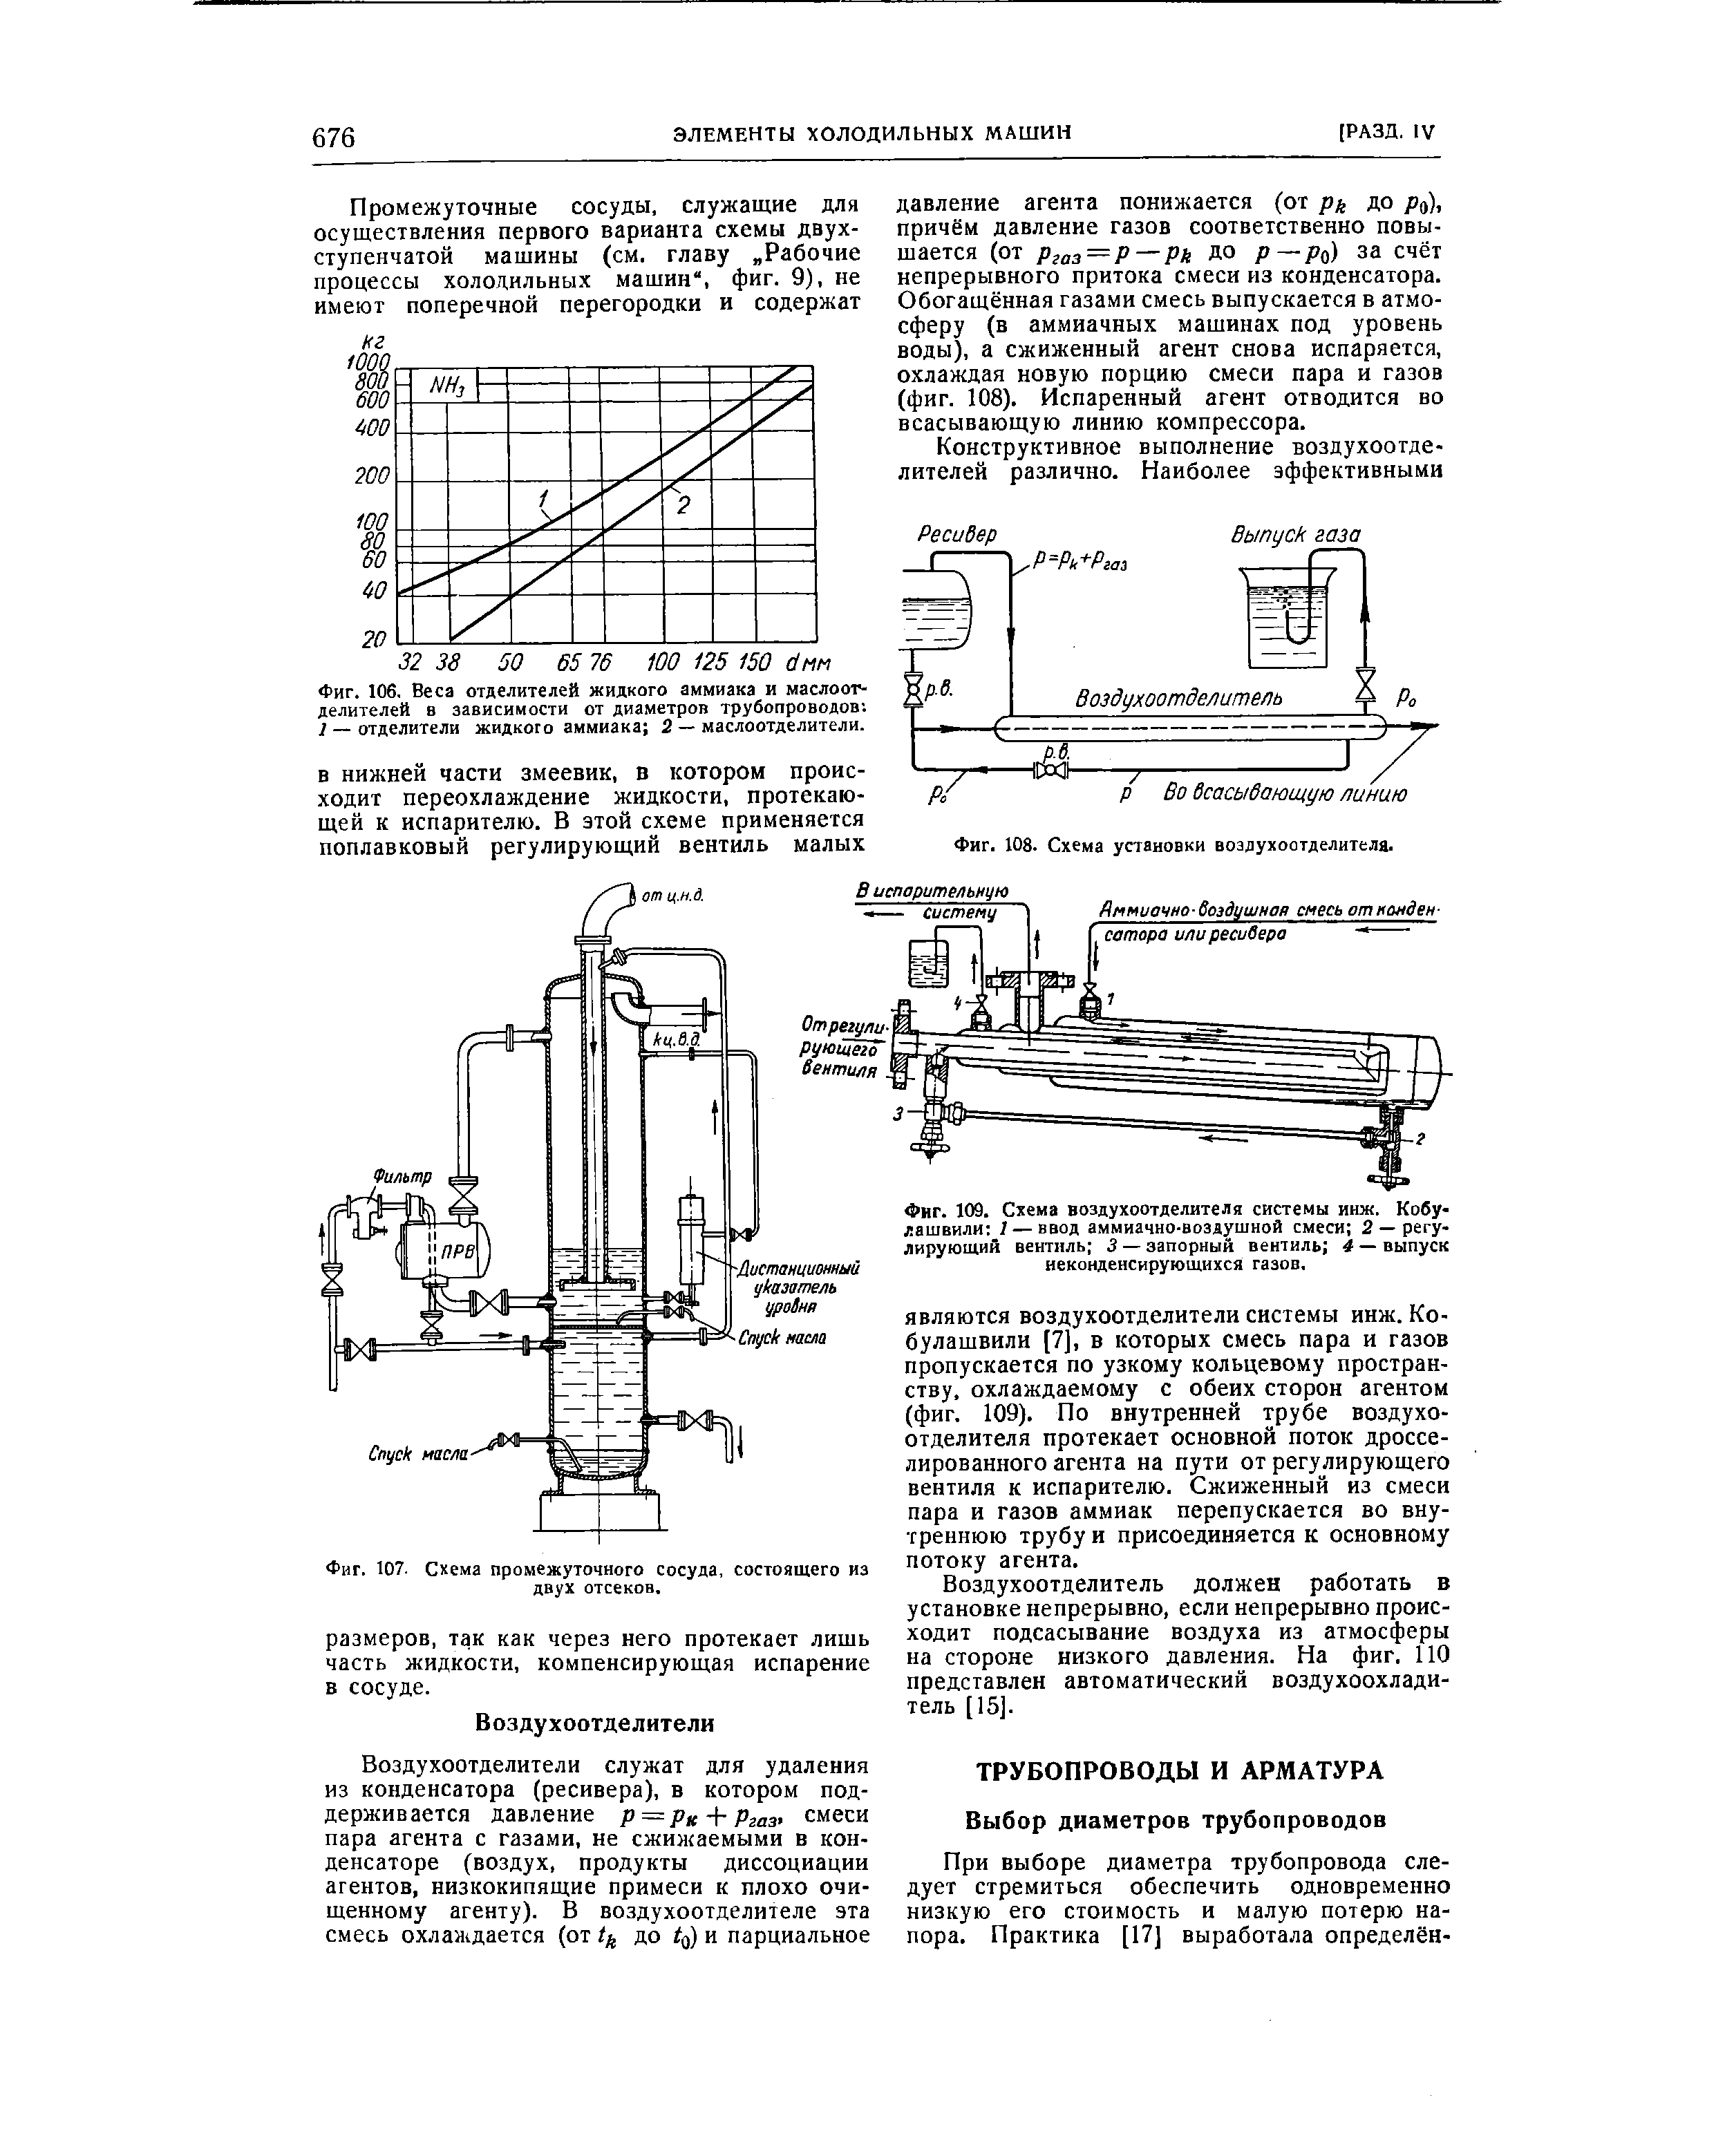 Фиг. 108. Схема установки воздухоотделителя.
